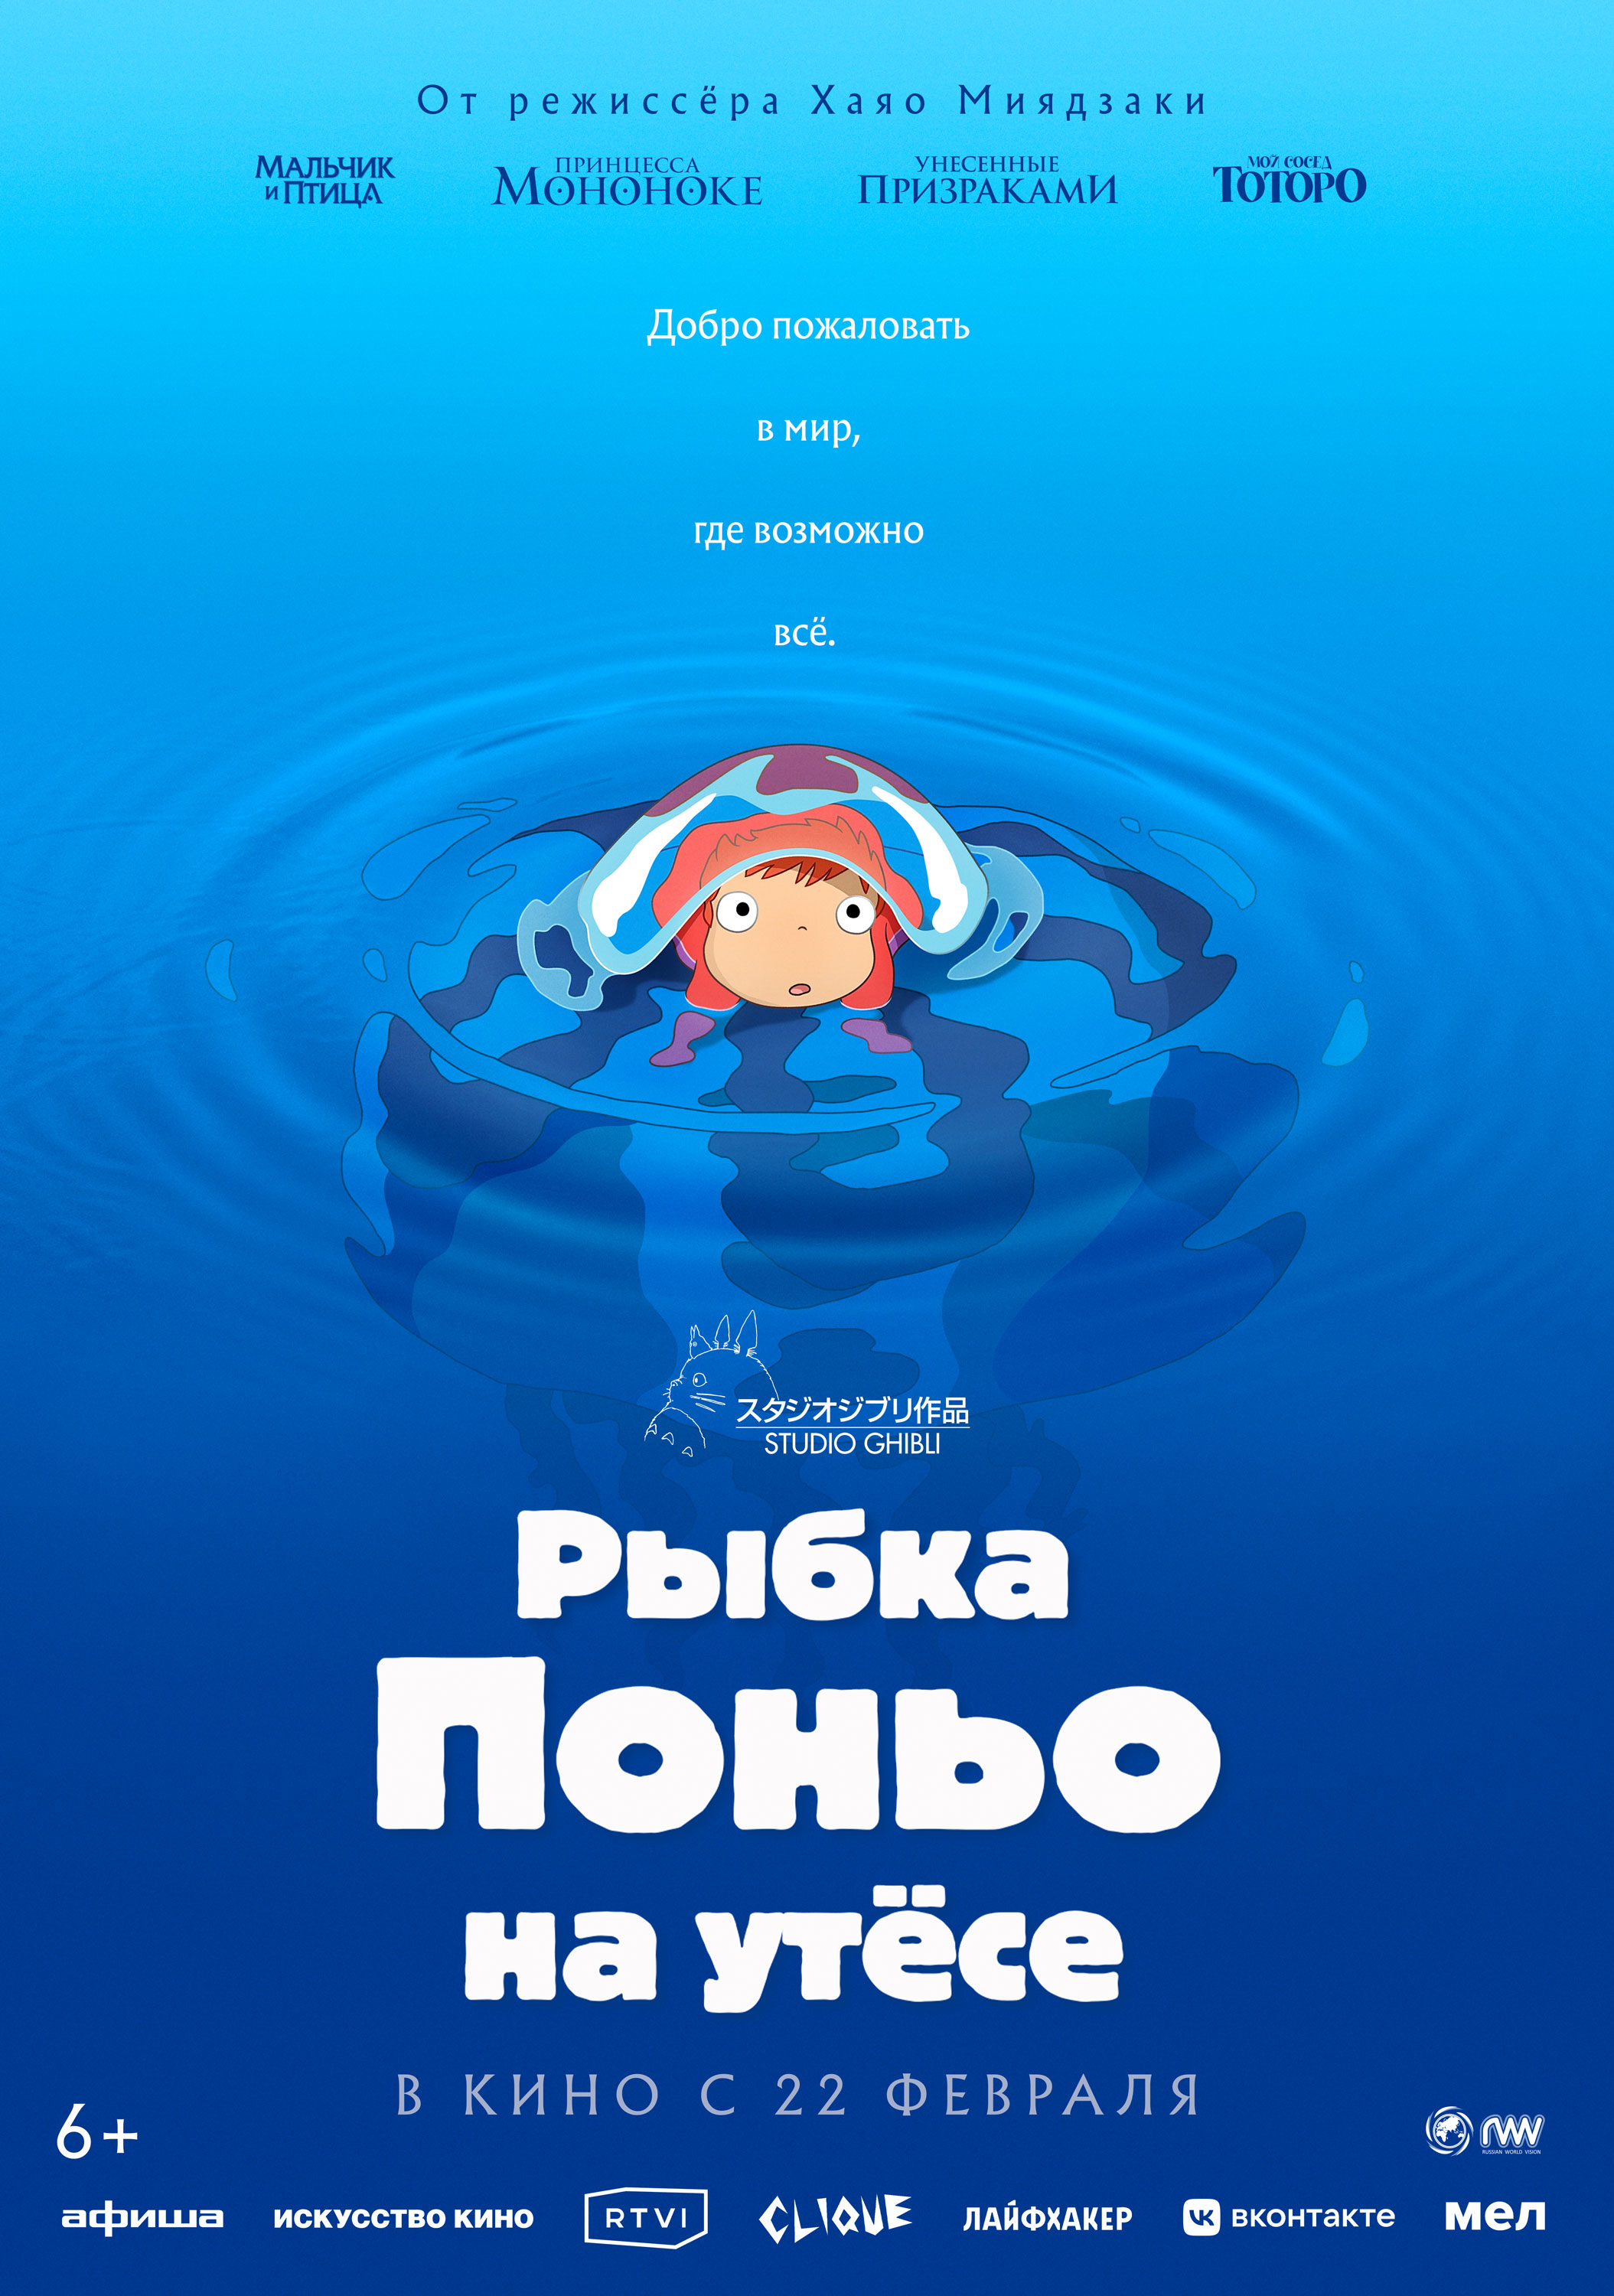 Смотреть Фильм онлайн  Рыбка Поньо на утёсе